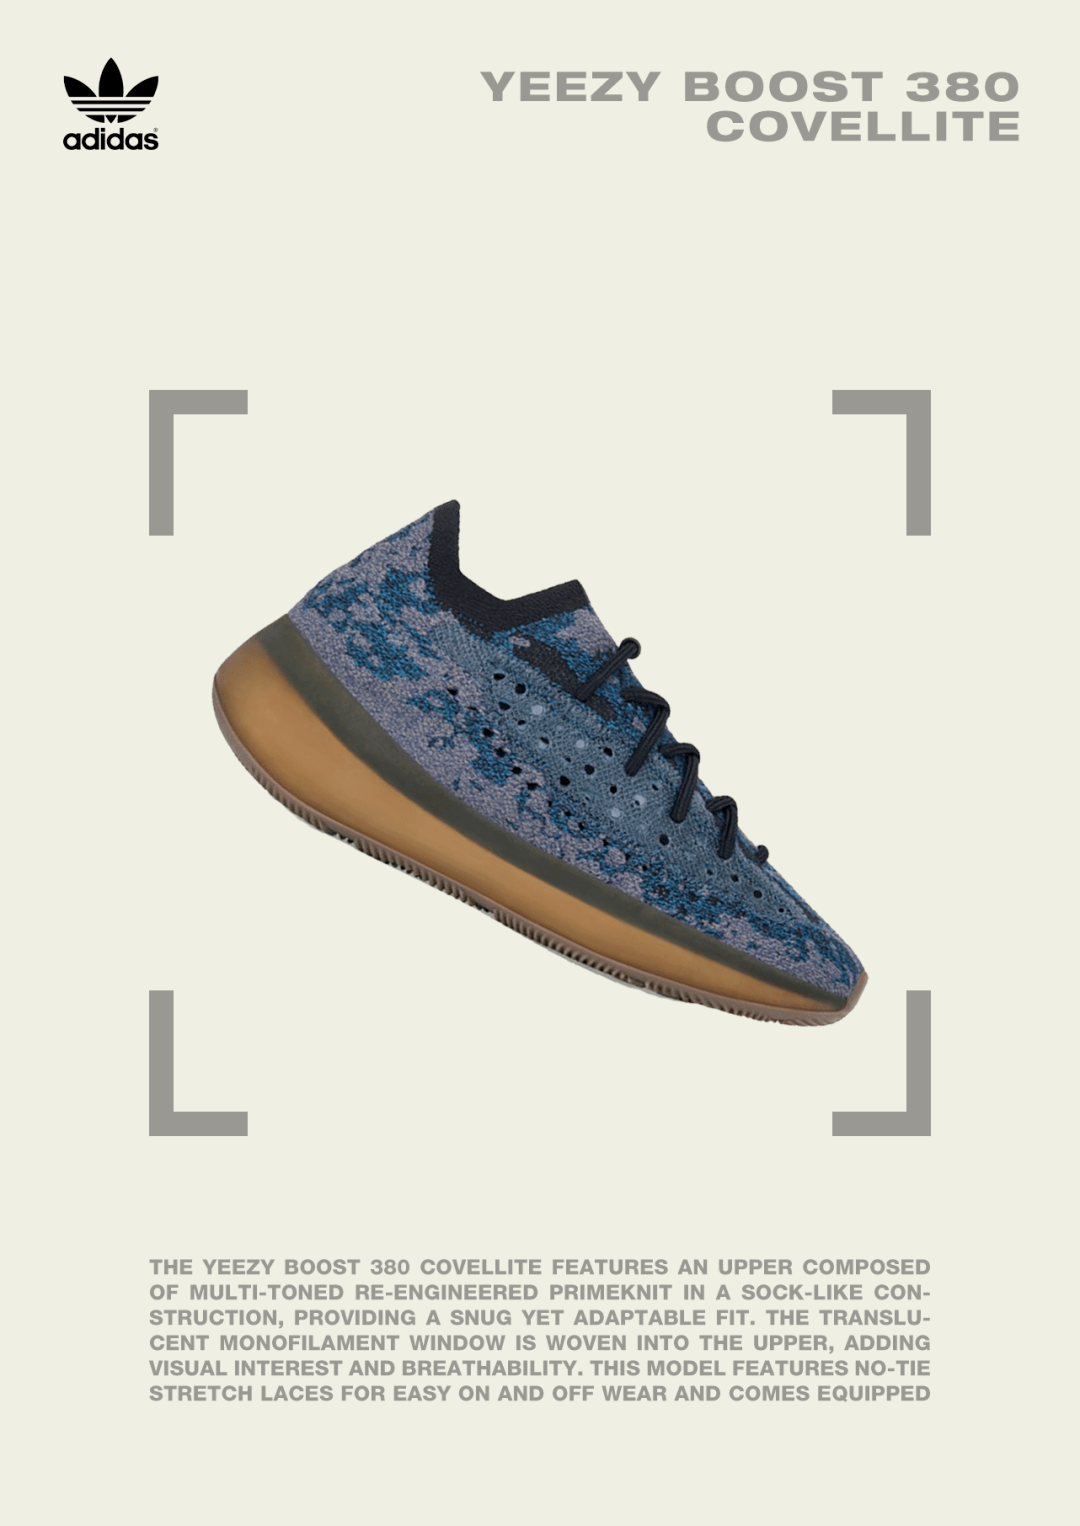 神秘的蓝色矿物丨adidas YEEZY BOOST 380 Covellite 新色到店_手机搜狐网